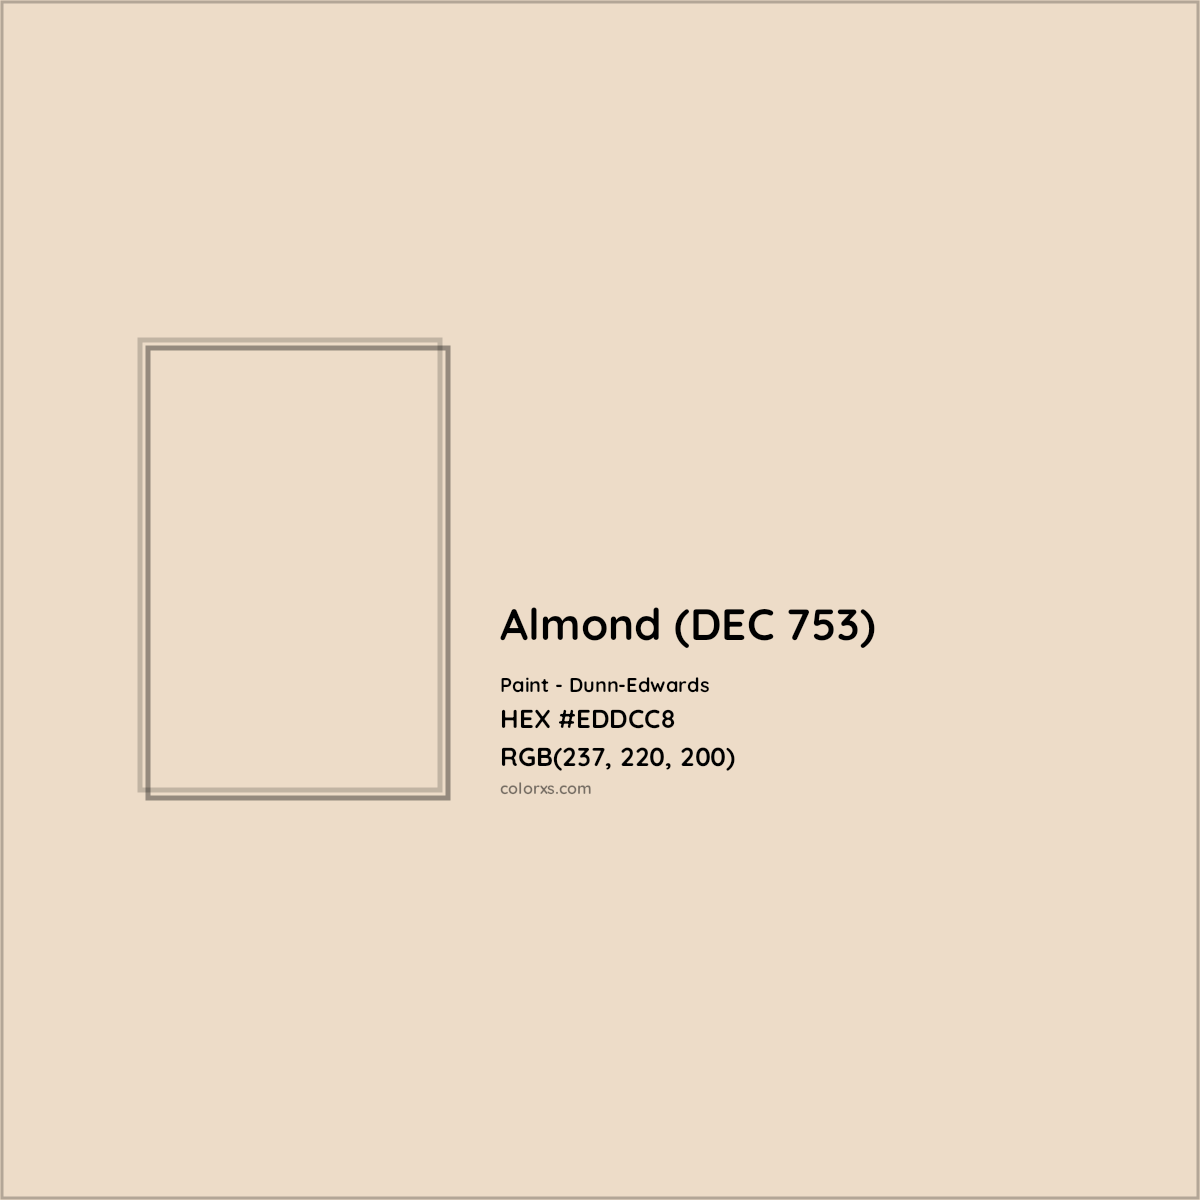 HEX #EDDCC8 Almond (DEC 753) Paint Dunn-Edwards - Color Code